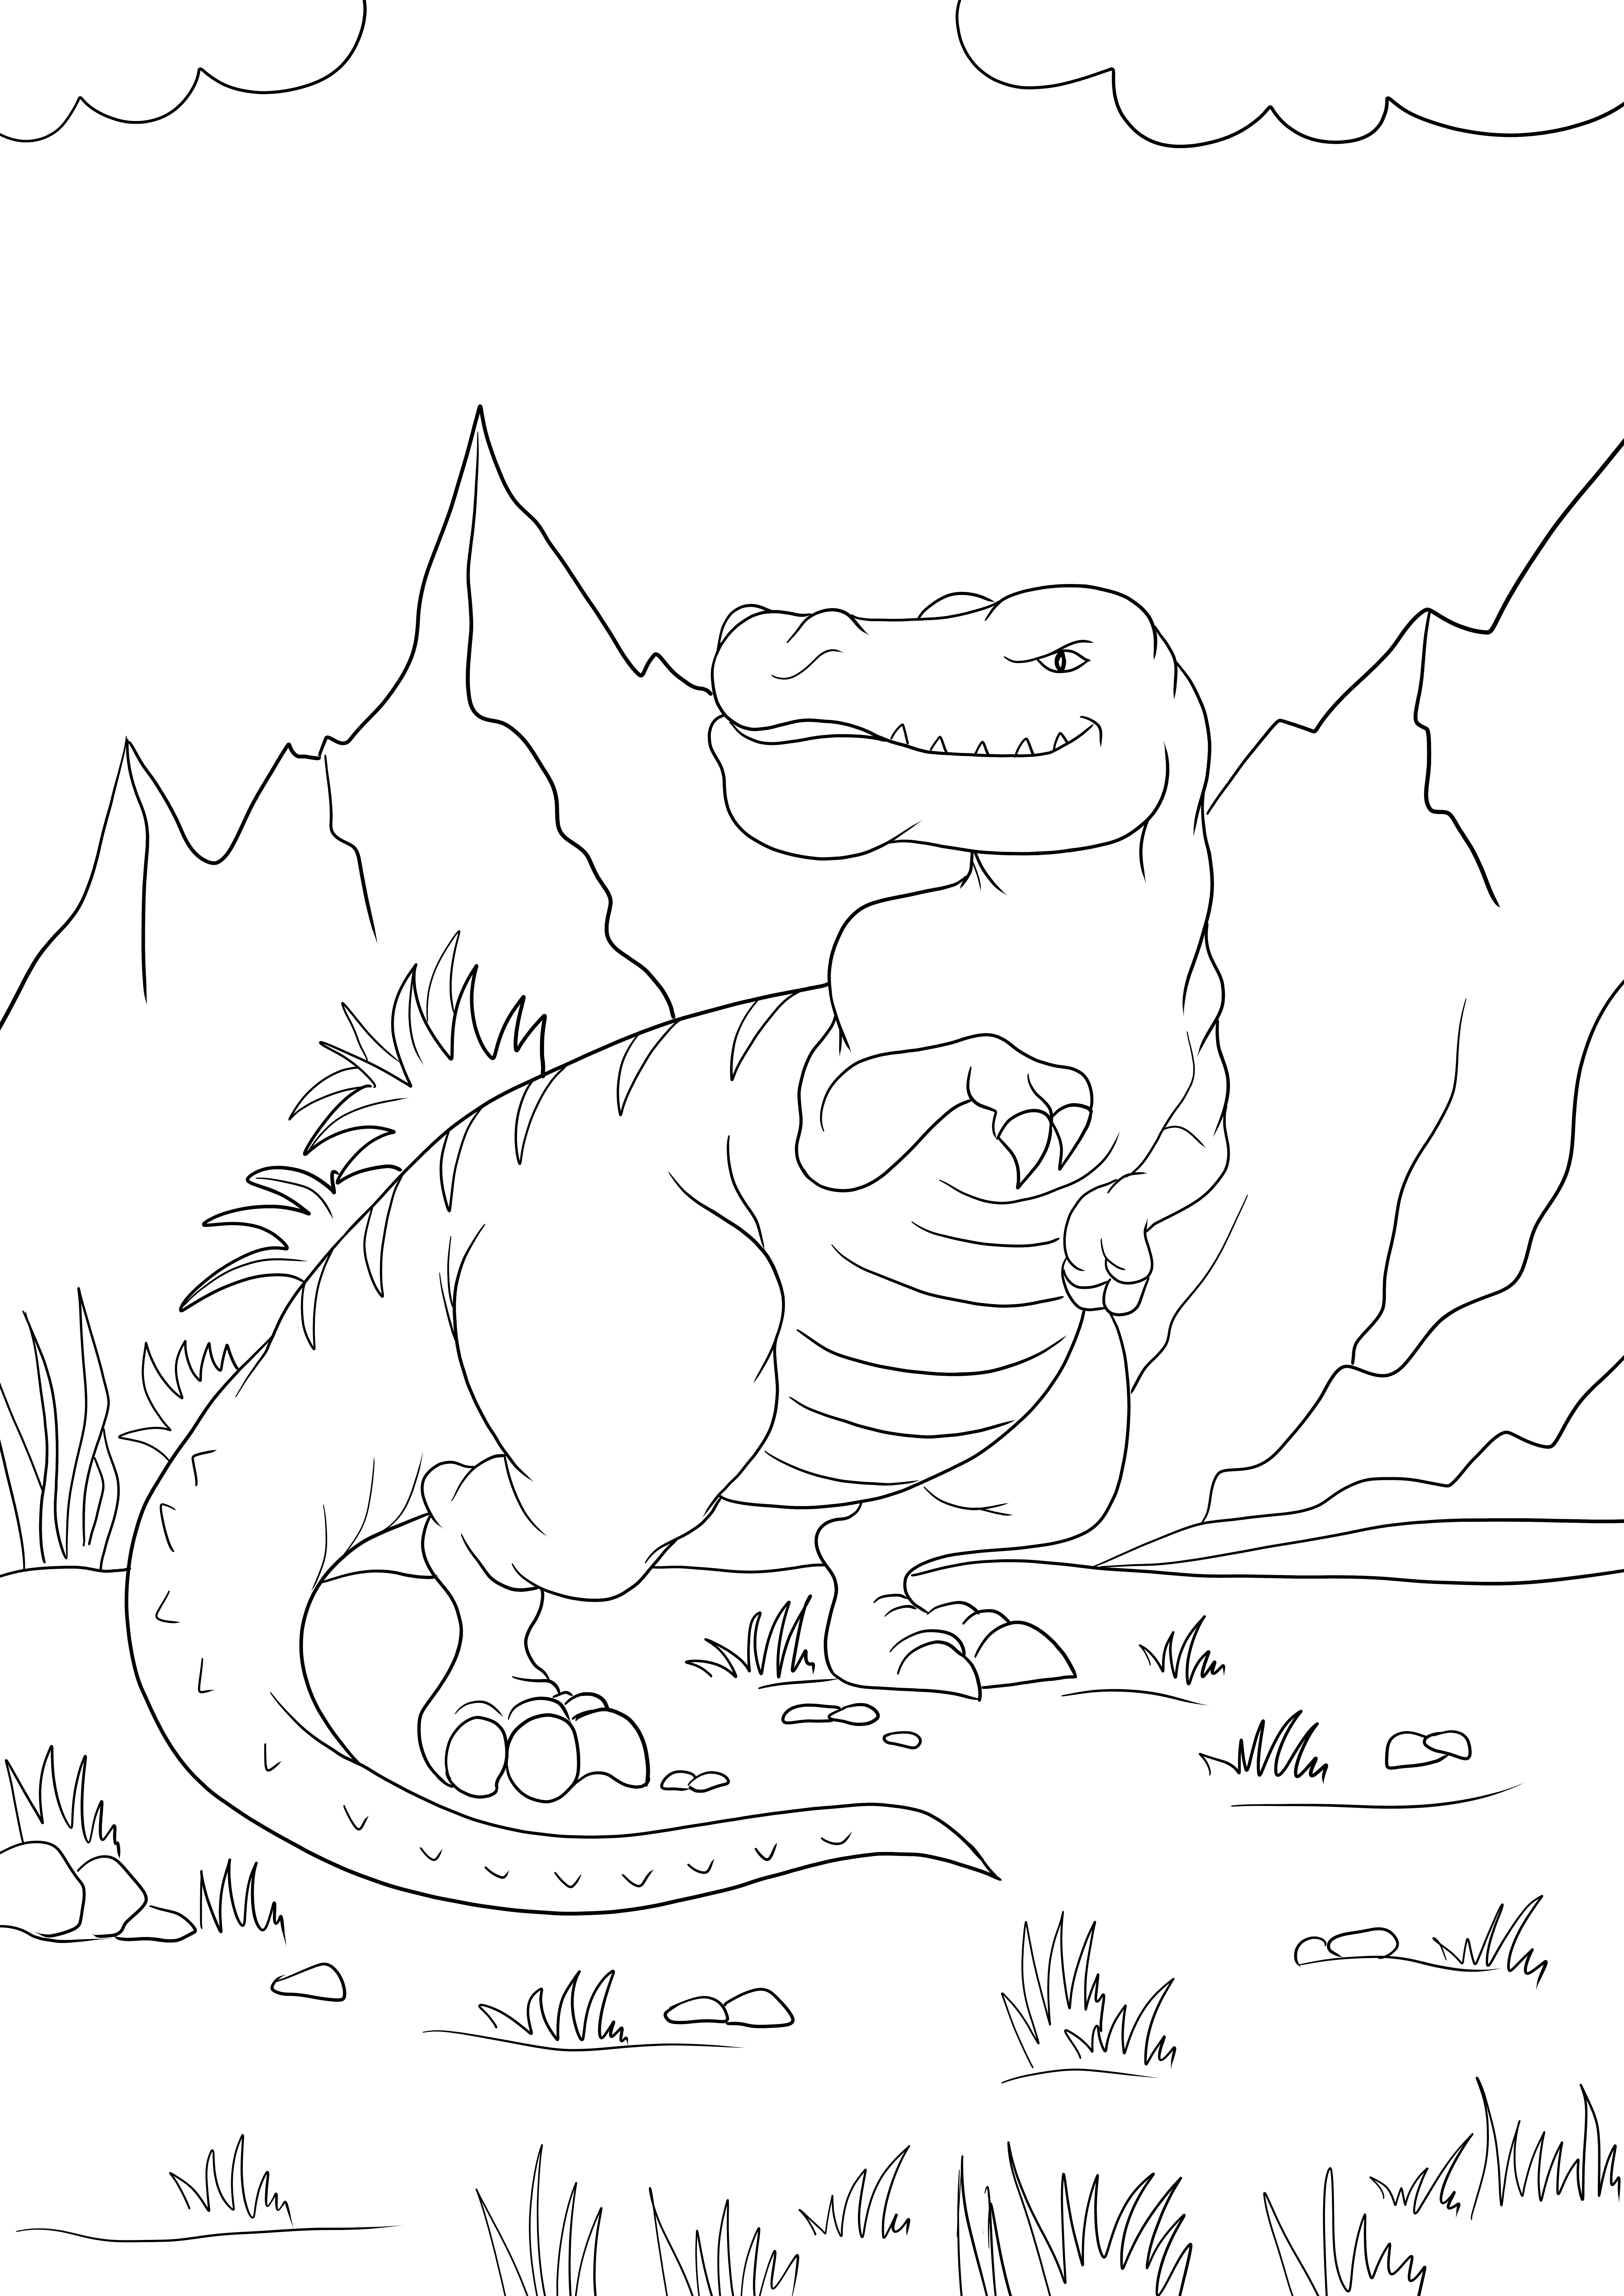 Tyrannosaurus Rex za darmo do druku do kolorowania dla dzieci